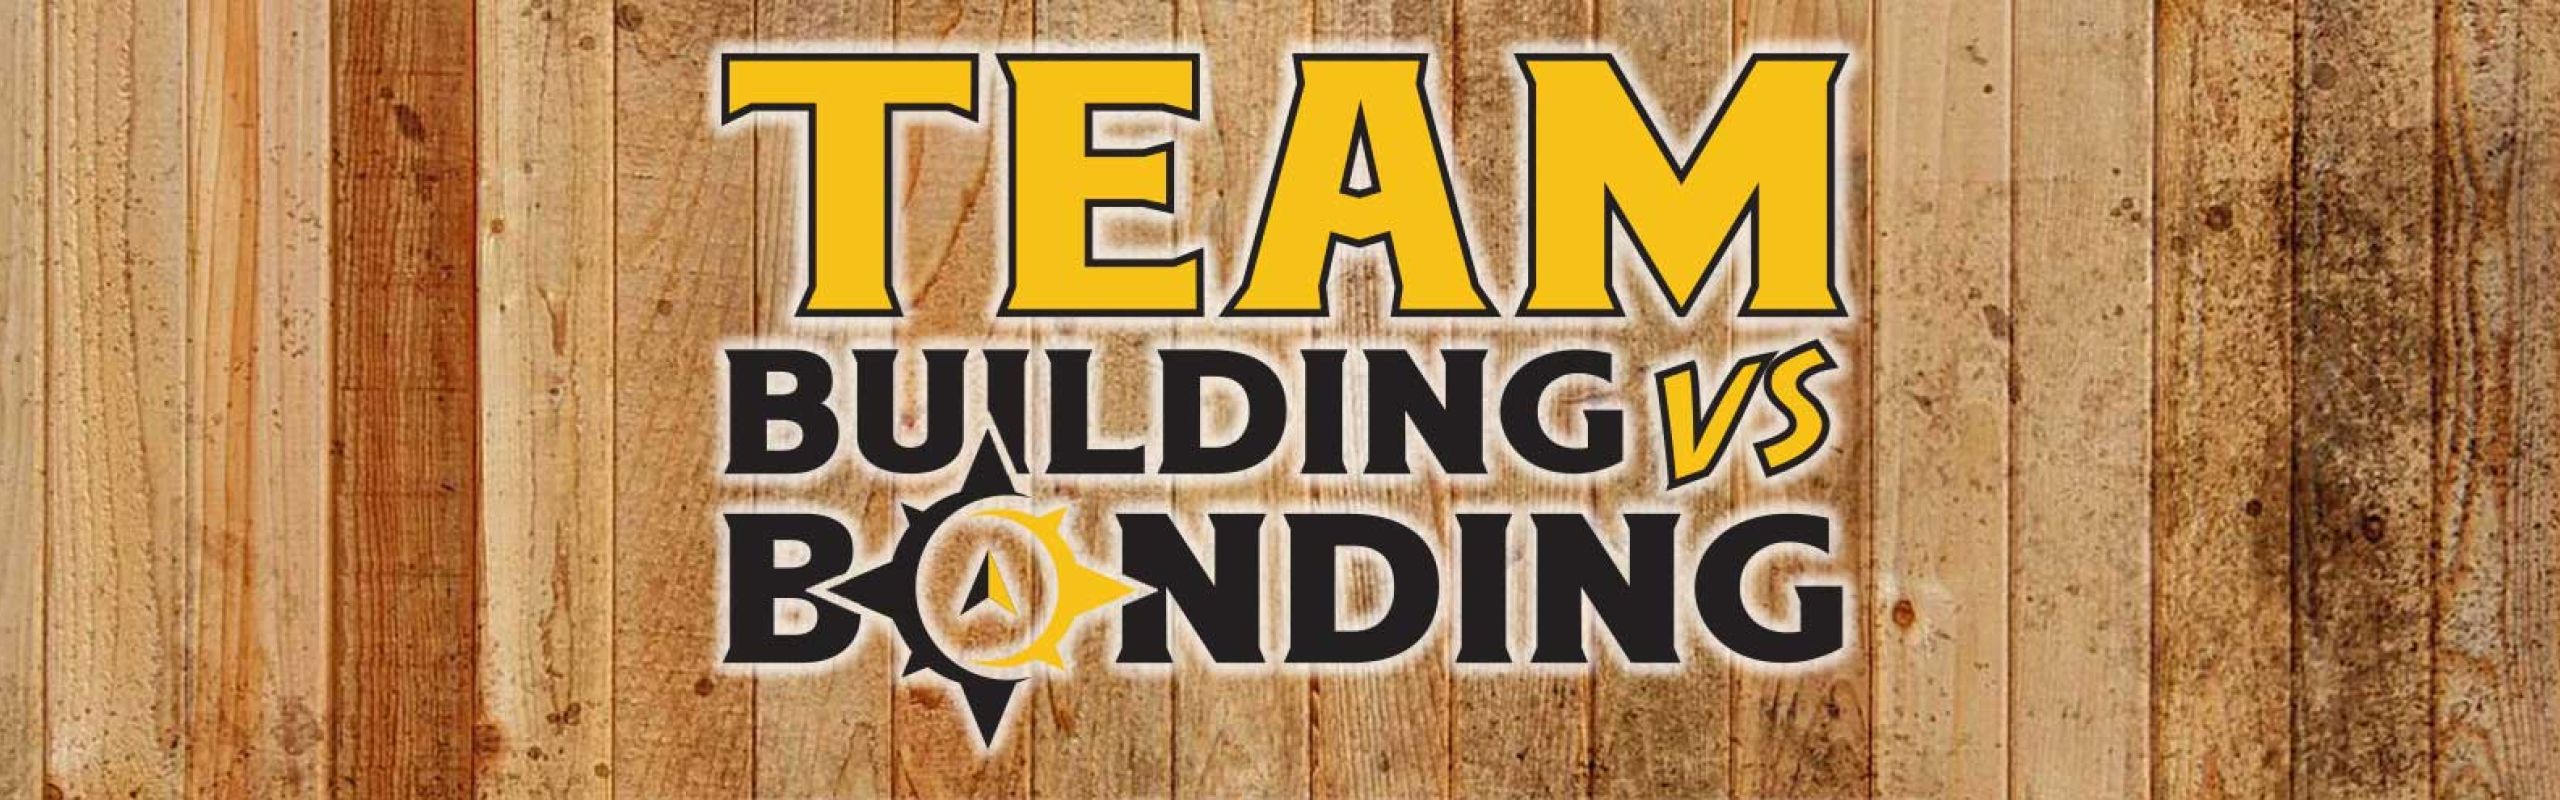 Team Building vs Team Bonding